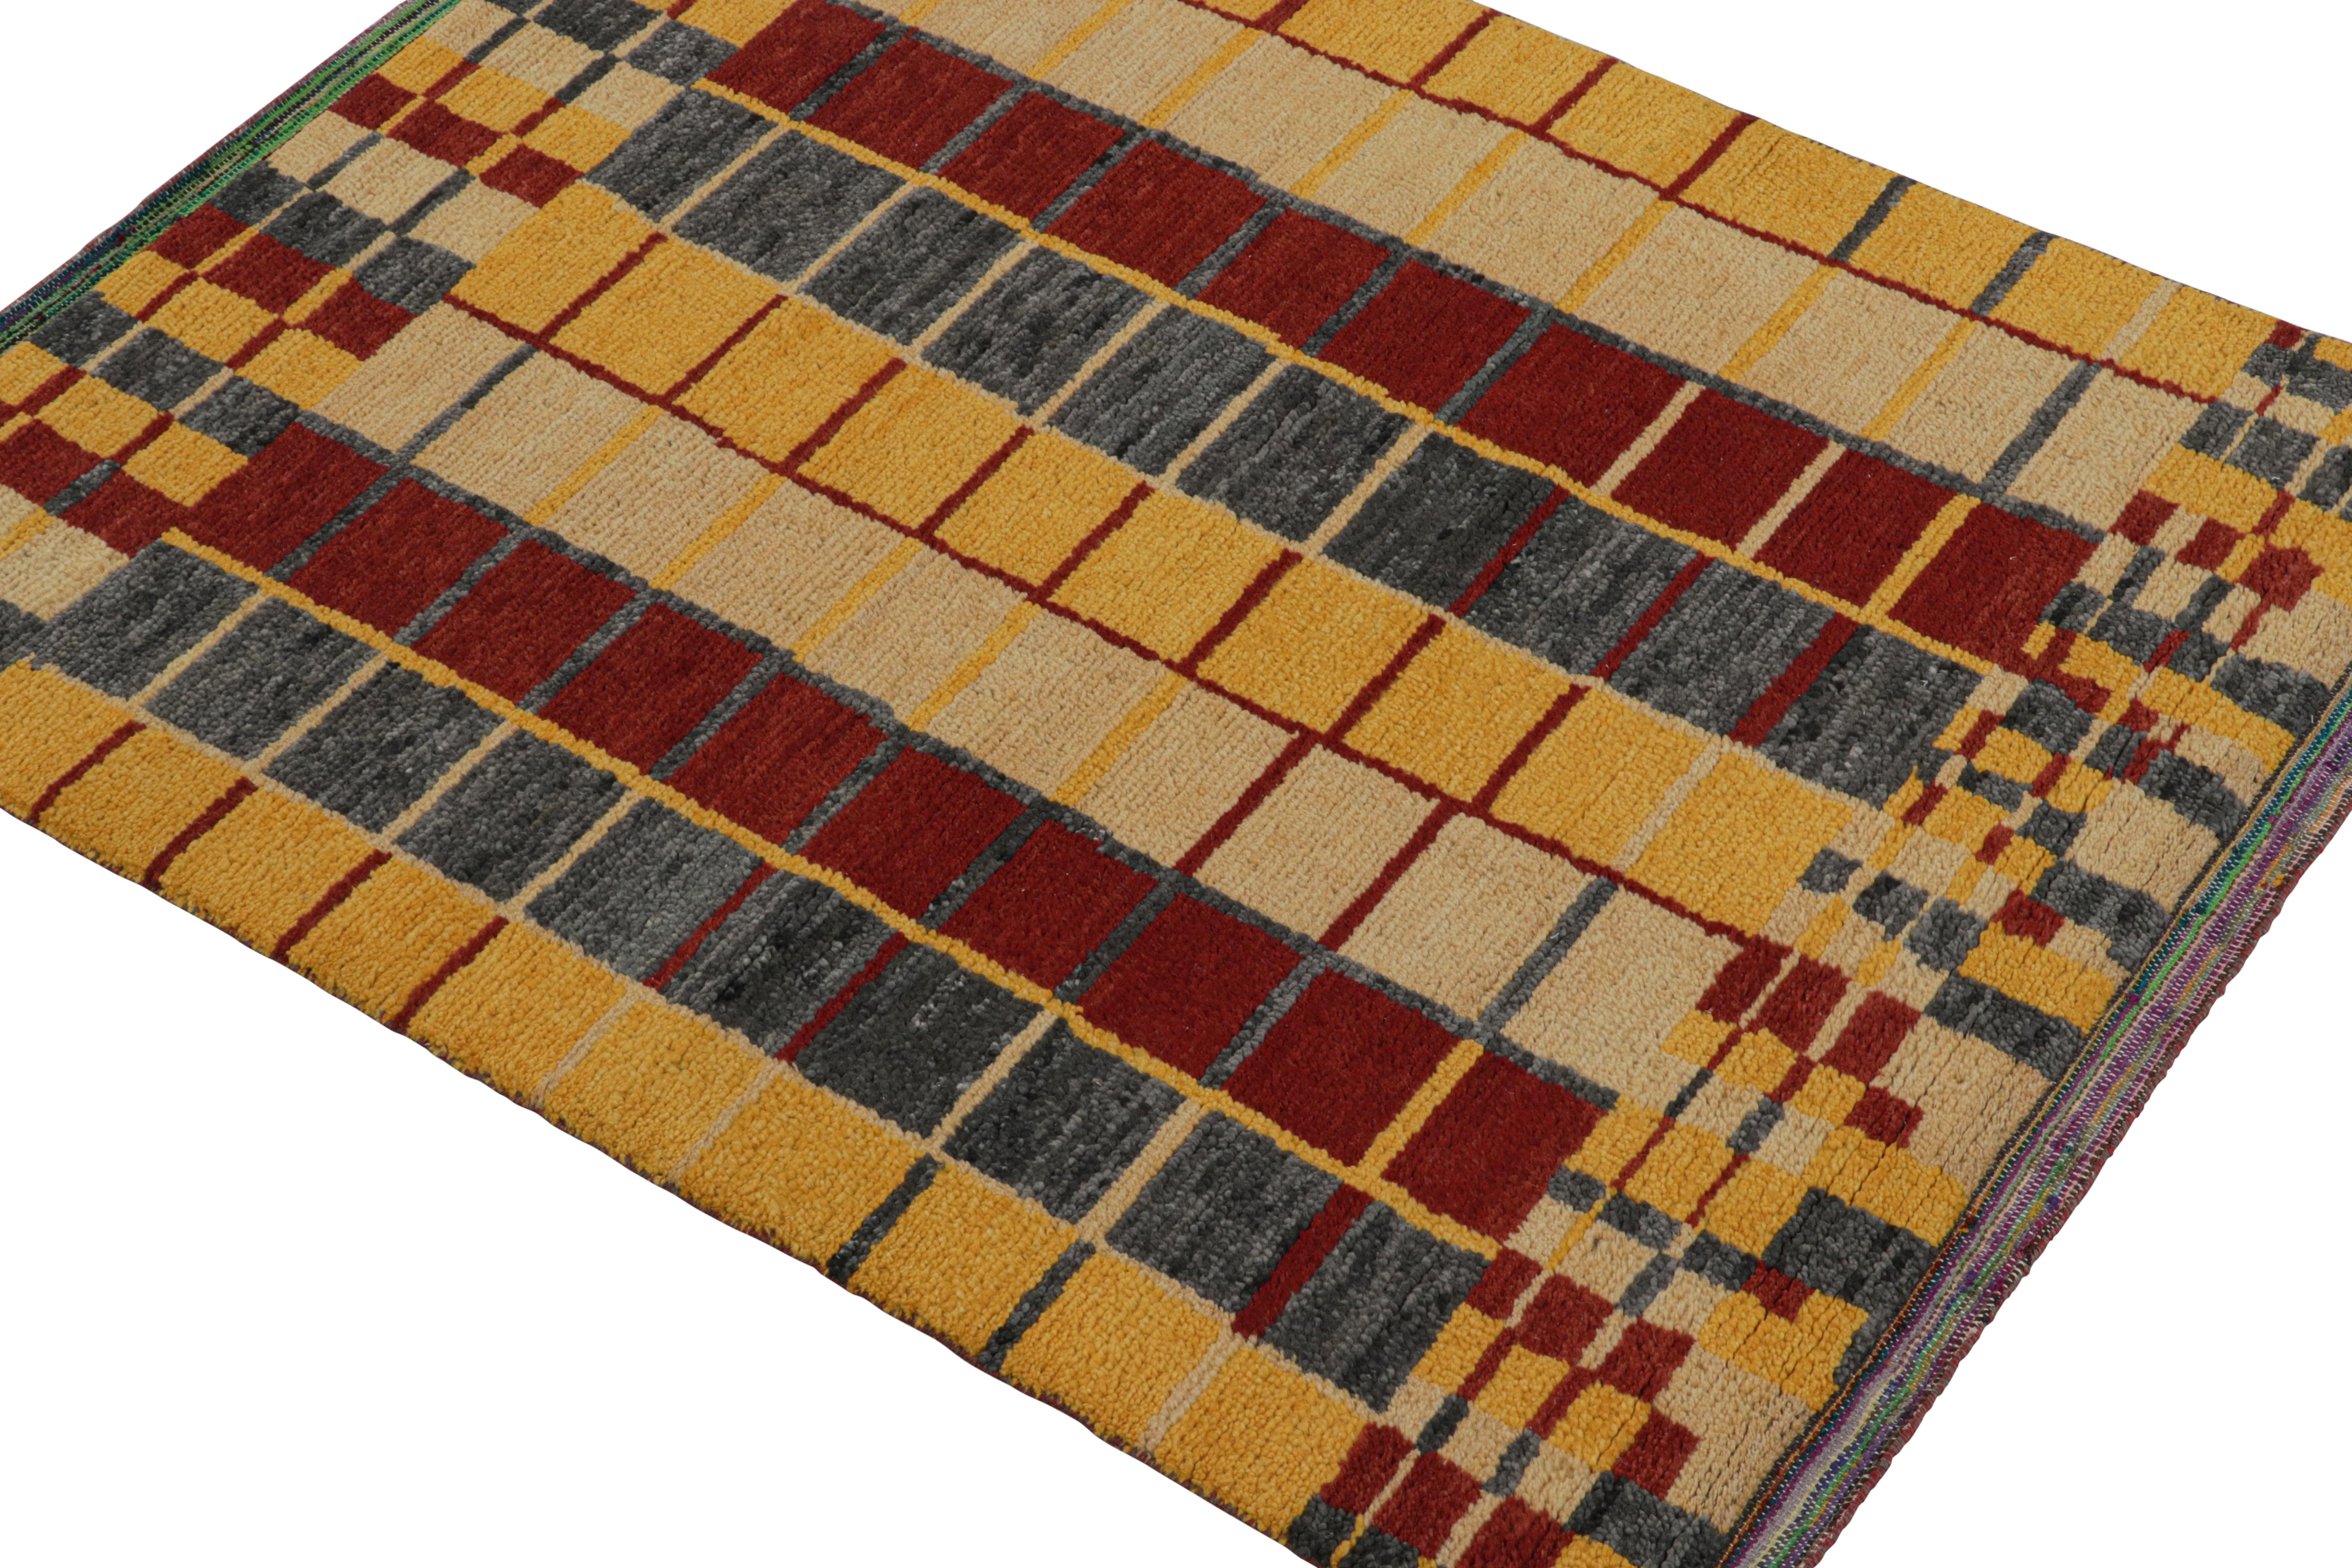 Ce tapis contemporain de 5 x 6 est le dernier-né de la nouvelle Collection Marocaine de Rug & Kilim - une interprétation audacieuse de ce style emblématique. Noué à la main dans un mélange de laine, de soie et de coton.
Plus d'informations sur le